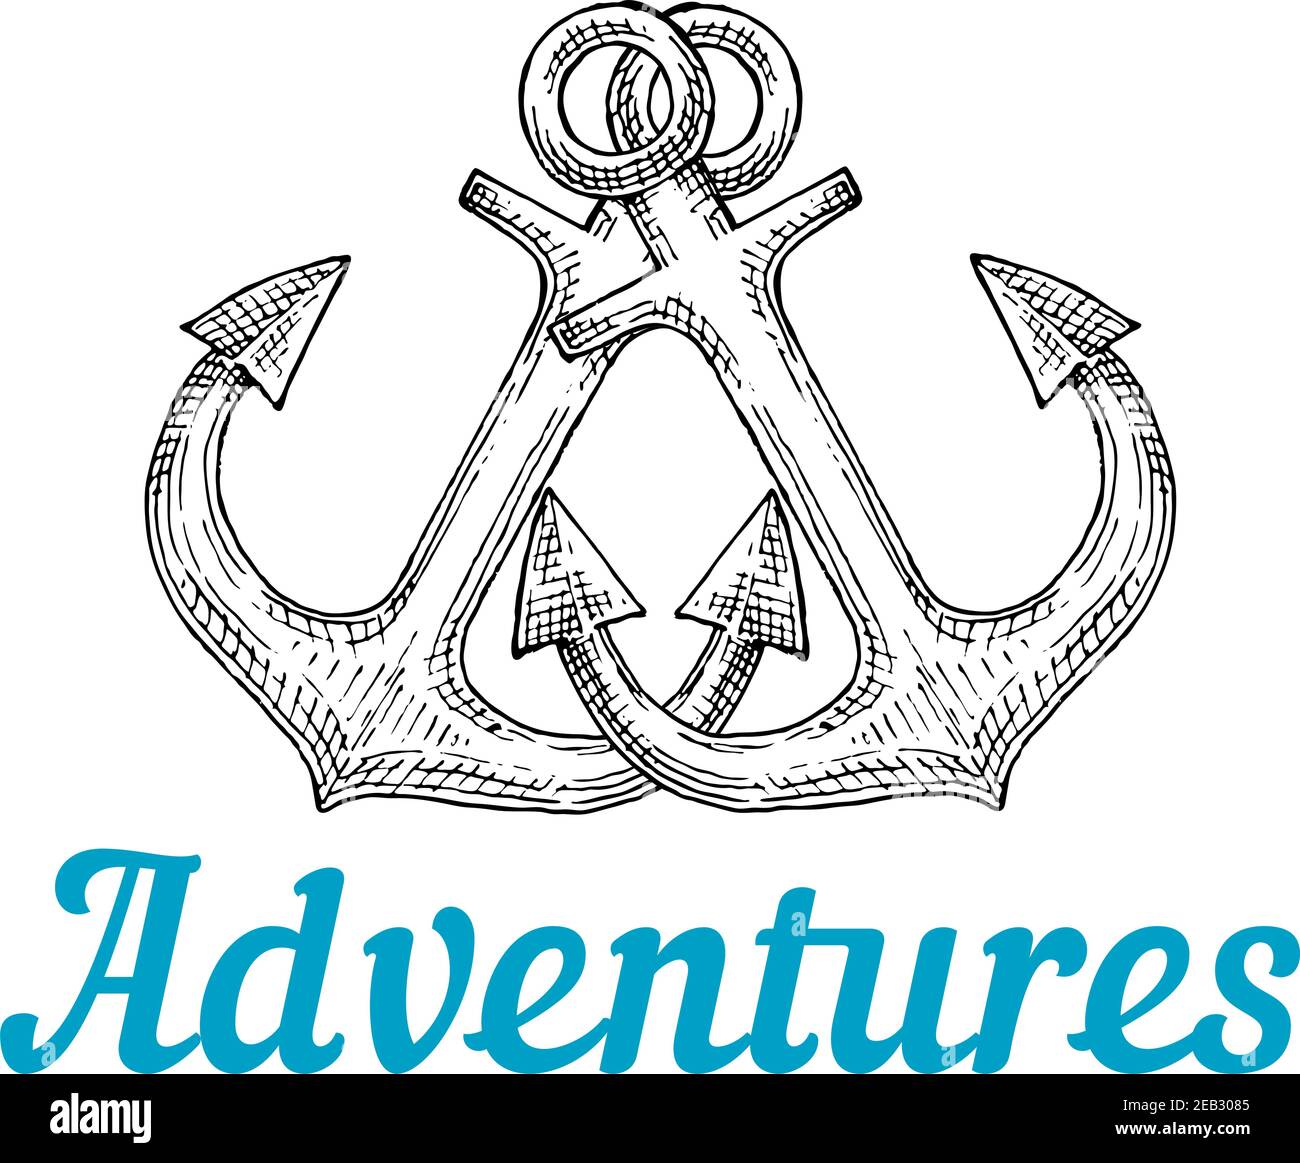 Gekreuzte Retro-Marine-Schiffsankern im Sketch-Stil mit Bildunterschrift Adventures unten. Für Sea Journey Thema oder Tattoo-Design Stock Vektor